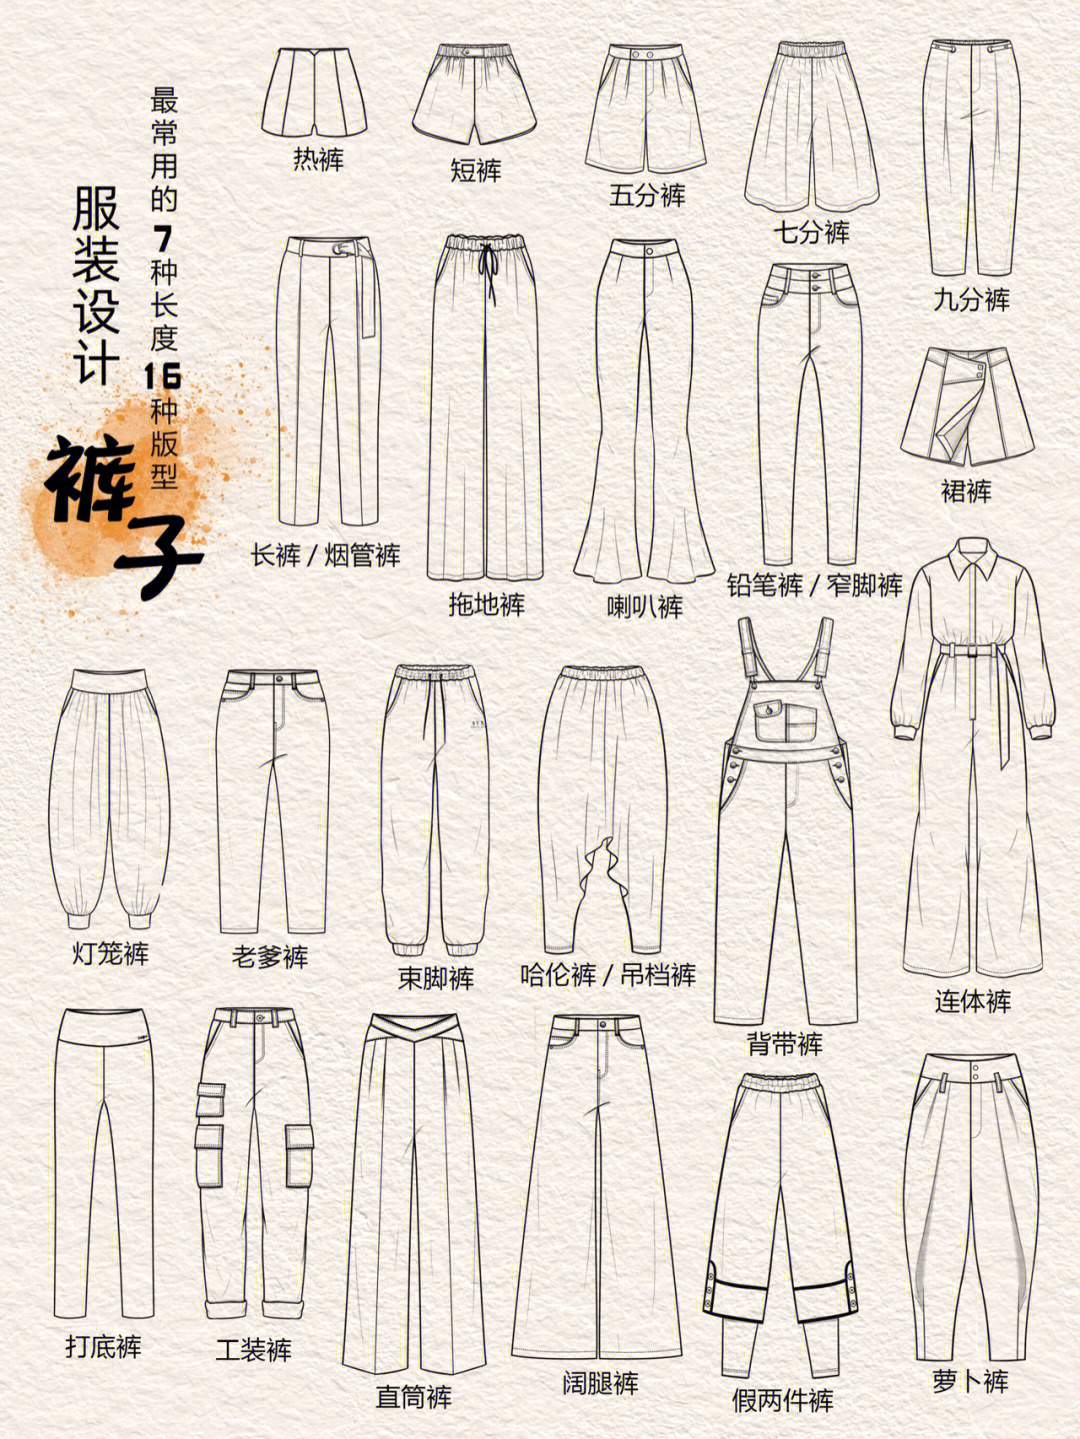 裤子样式名称及其图片图片